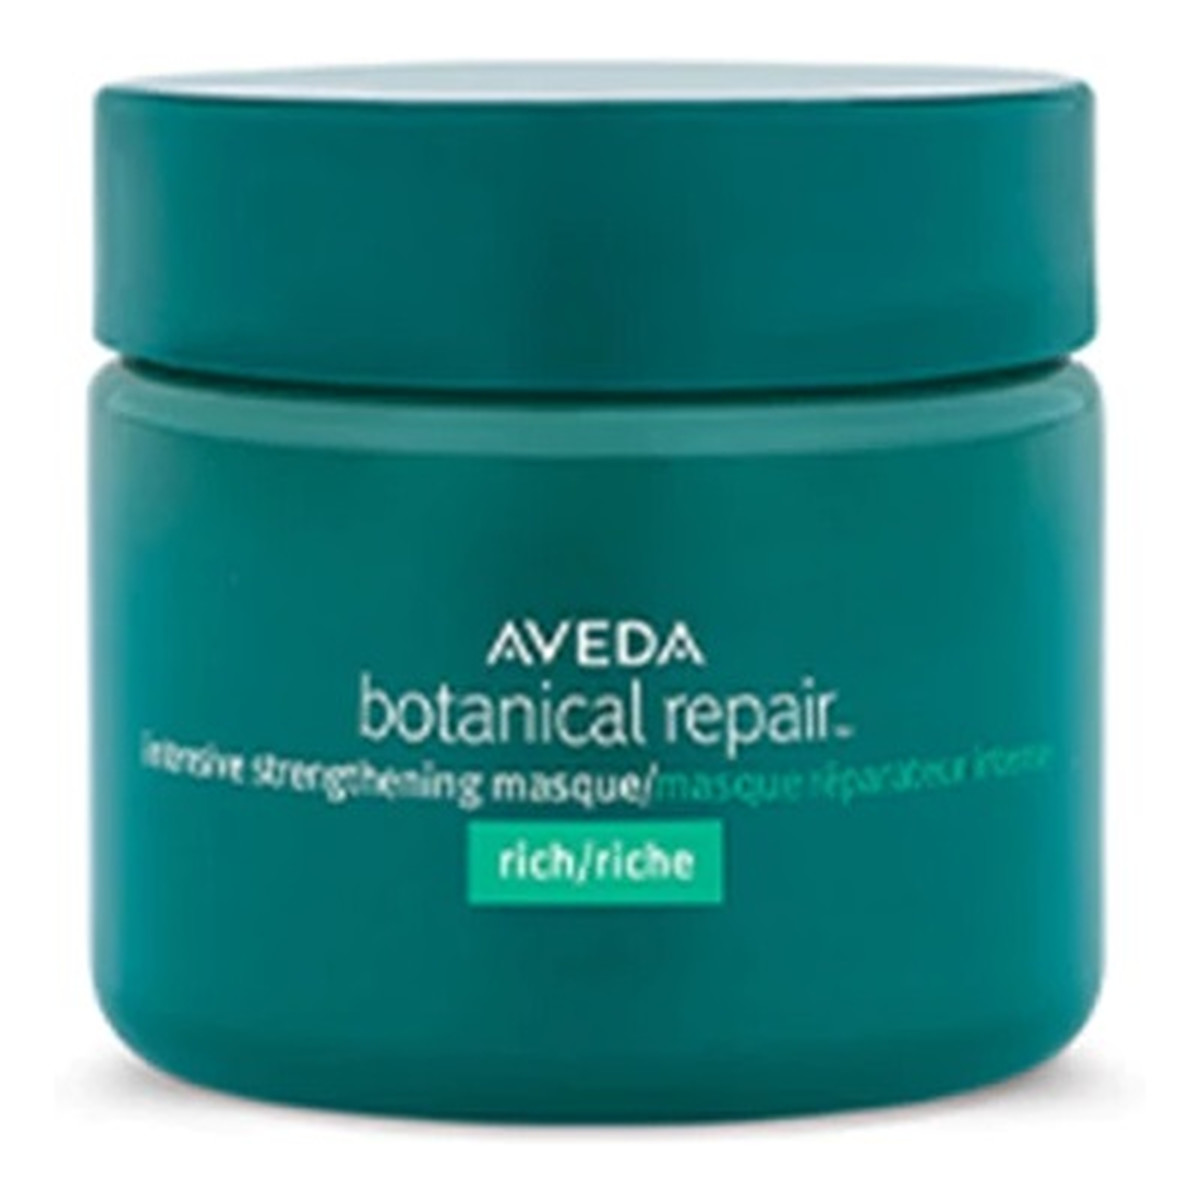 Aveda Botanical repair intensive strengthening masque rich intensywnie wzmacniająca maska do włosów 25ml